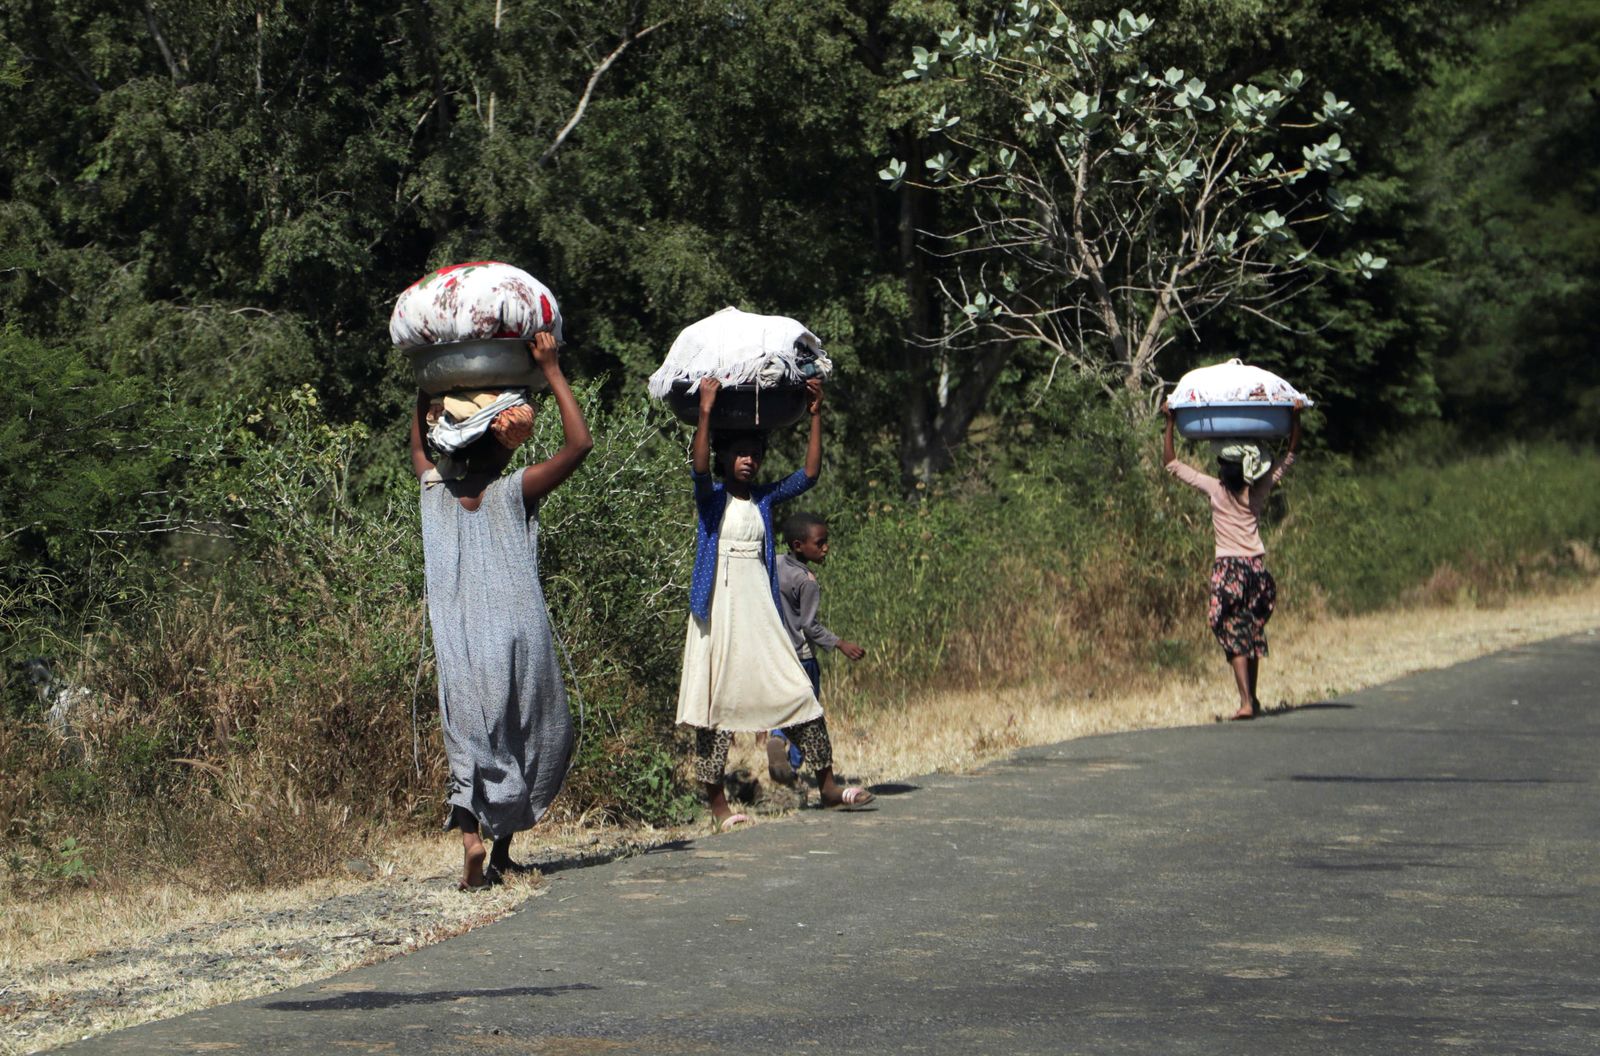 فتيات يحملن أغراضاً  قرب بلدة سوروكا بمنطقة أمهرة قرب من الحدود مع تيغراي، إثيوبيا، 9 نوفمبر 2020  - REUTERS